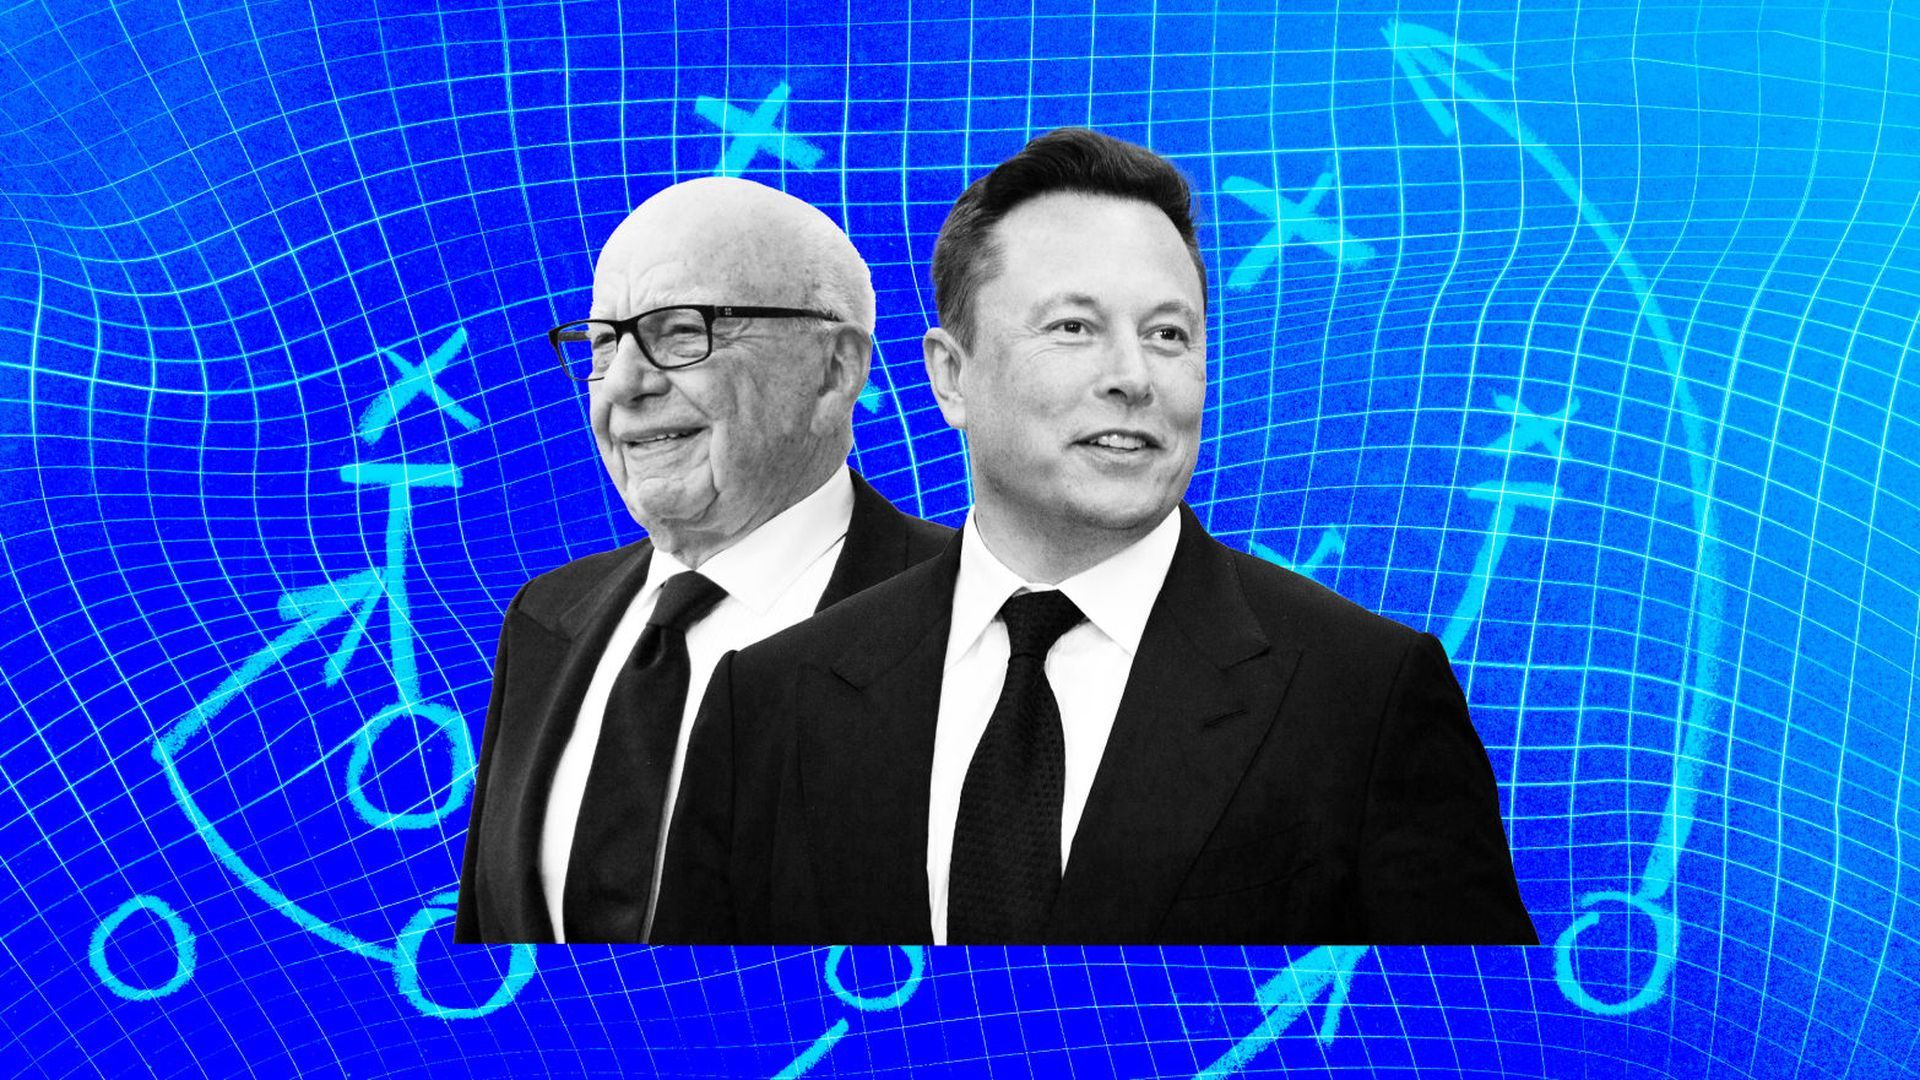 Elon Musk benadert Rupert Murdoch bij Super Bowl: hadden ze het echt over Dogecoin?